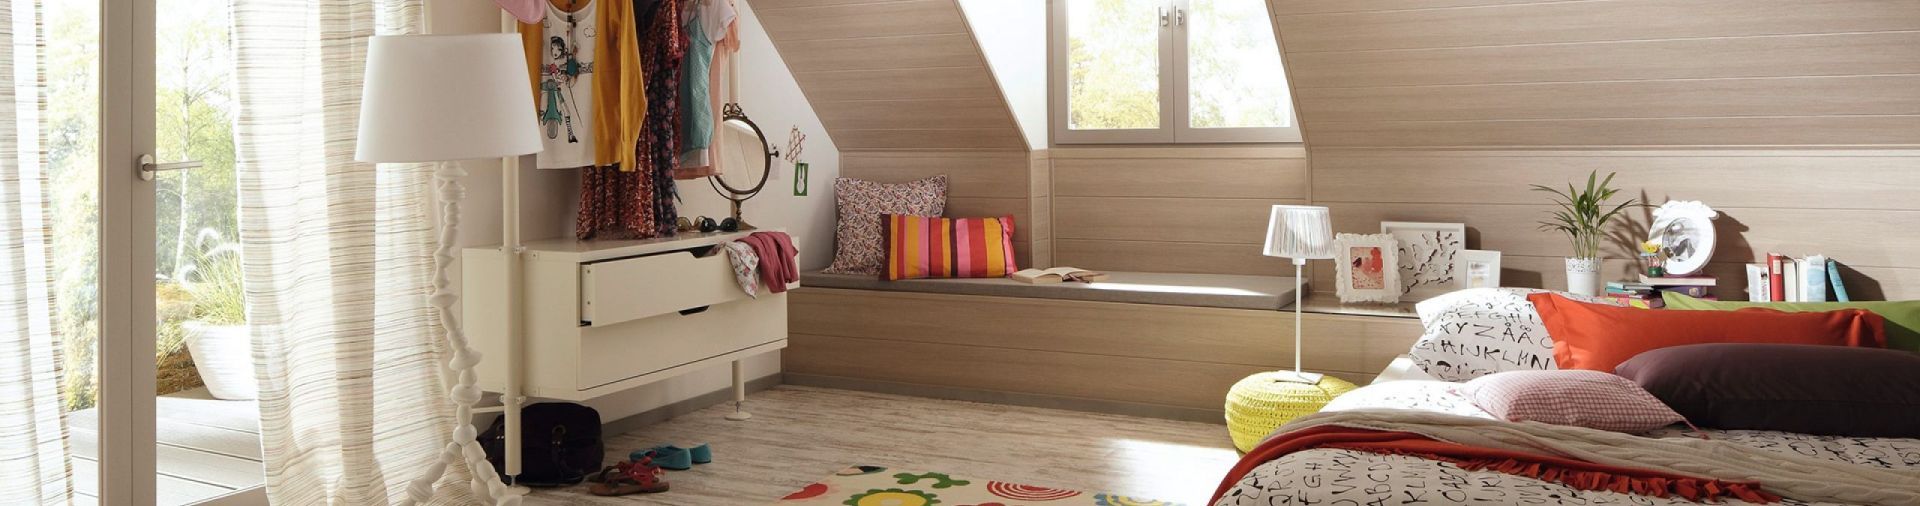 Ein Schlafzimmer mit einem Bett und einem Fenster mit einem Teppich auf dem Boden | Handel Ertmann